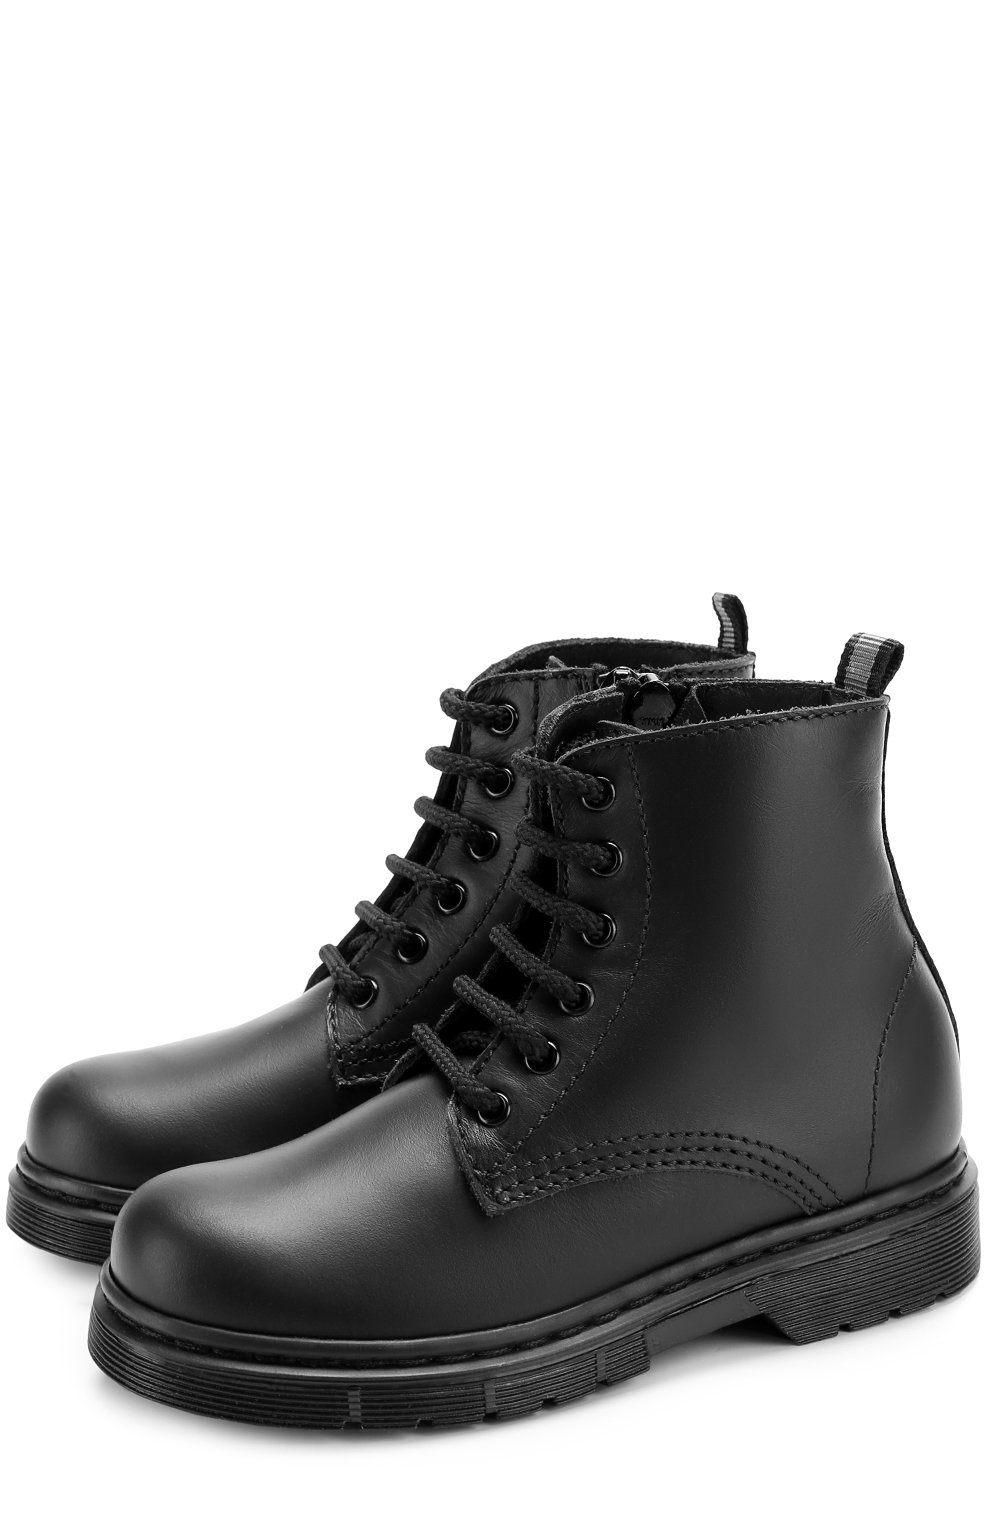 Ботинки Il Gufo, Кожаные ботинки на шнуровке с молнией Il Gufo, Италия, Чёрный, Кожа натуральная-100%; Подошва-резина-100%; Стелька-кожа-100%, 2284752  - купить